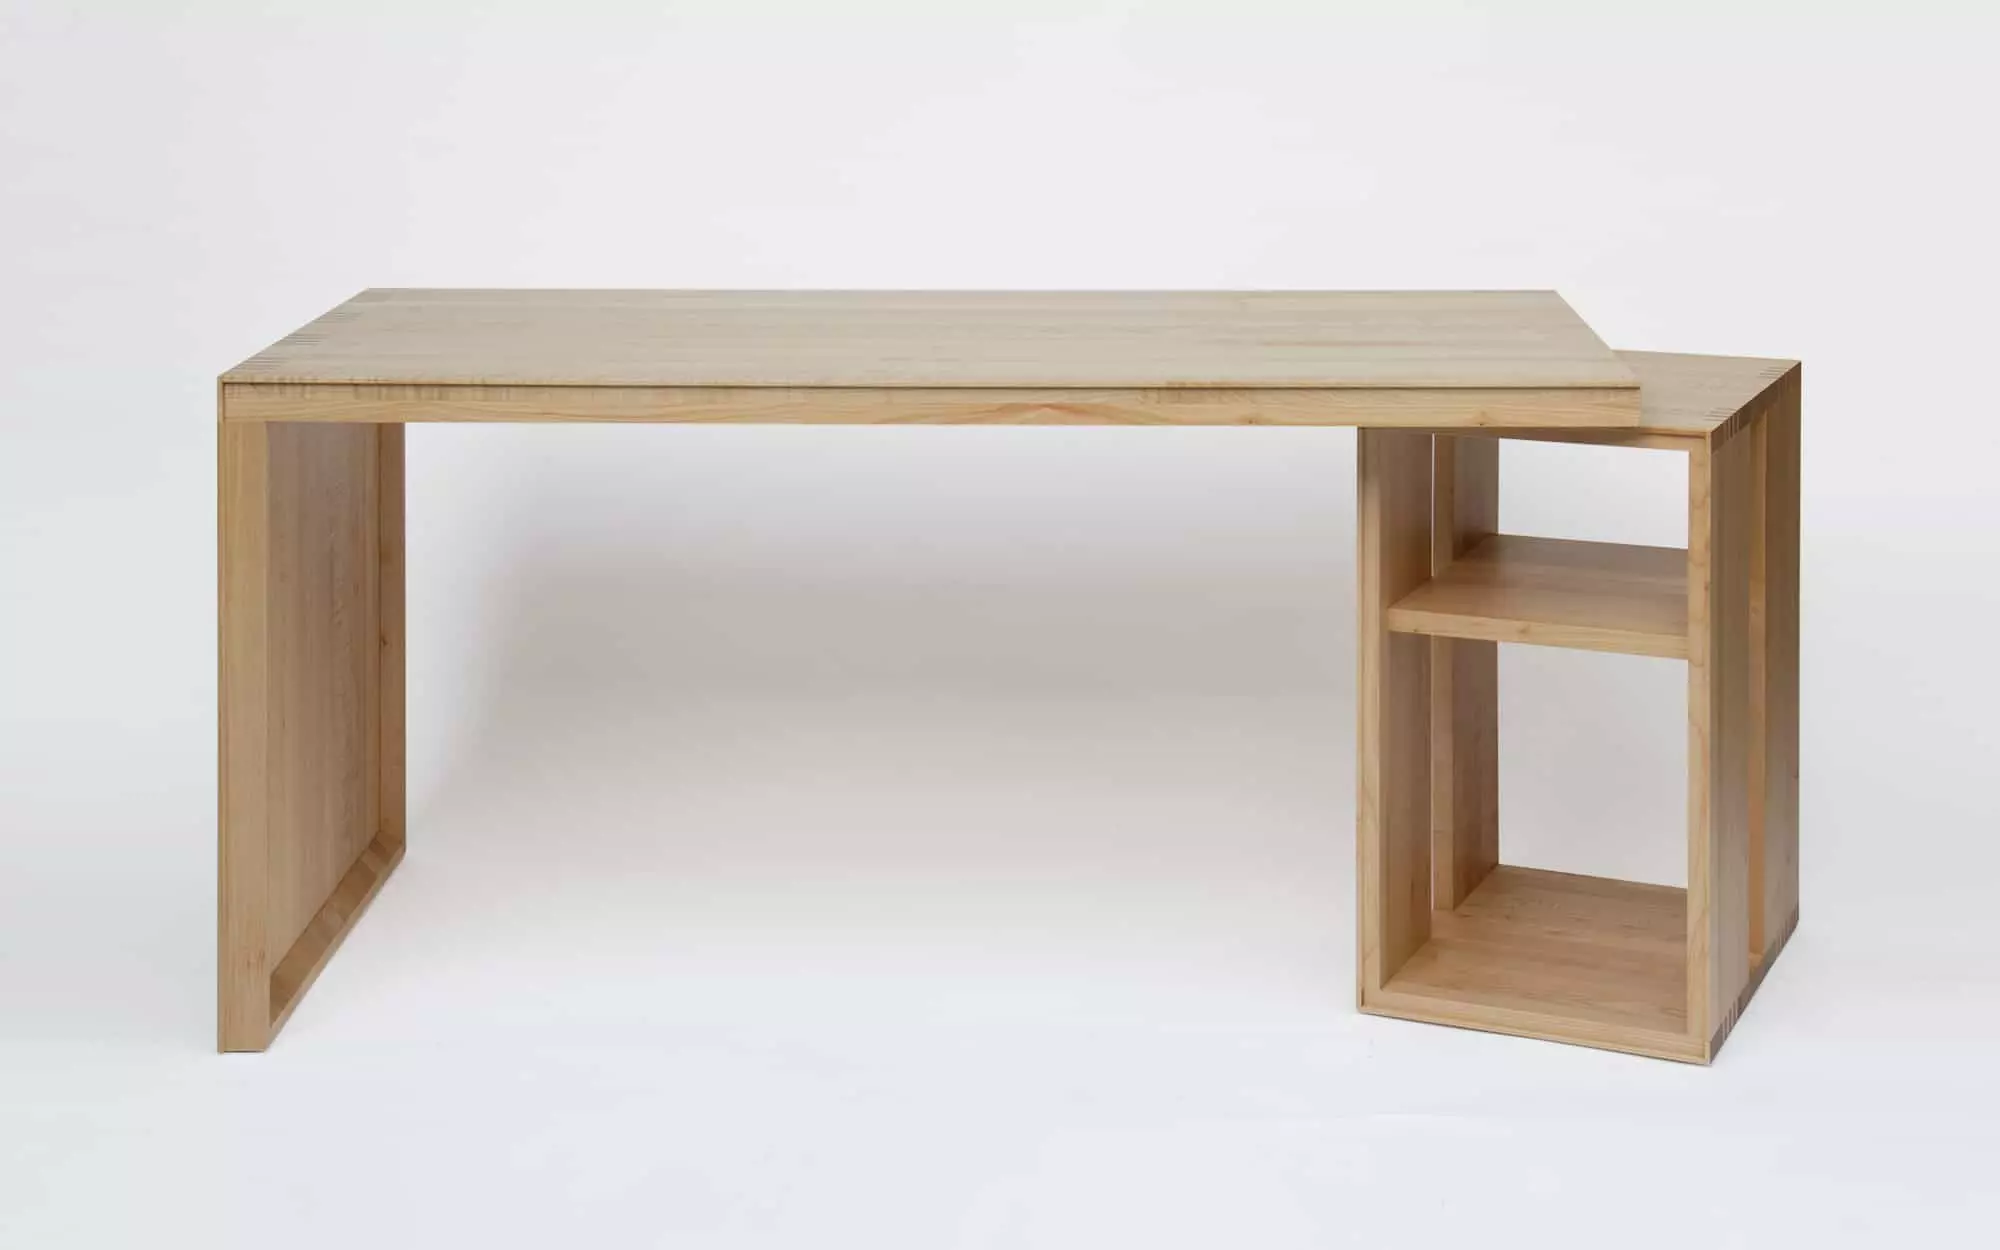 Duo Desk - François Bauchet - Miscellaneous - Galerie kreo